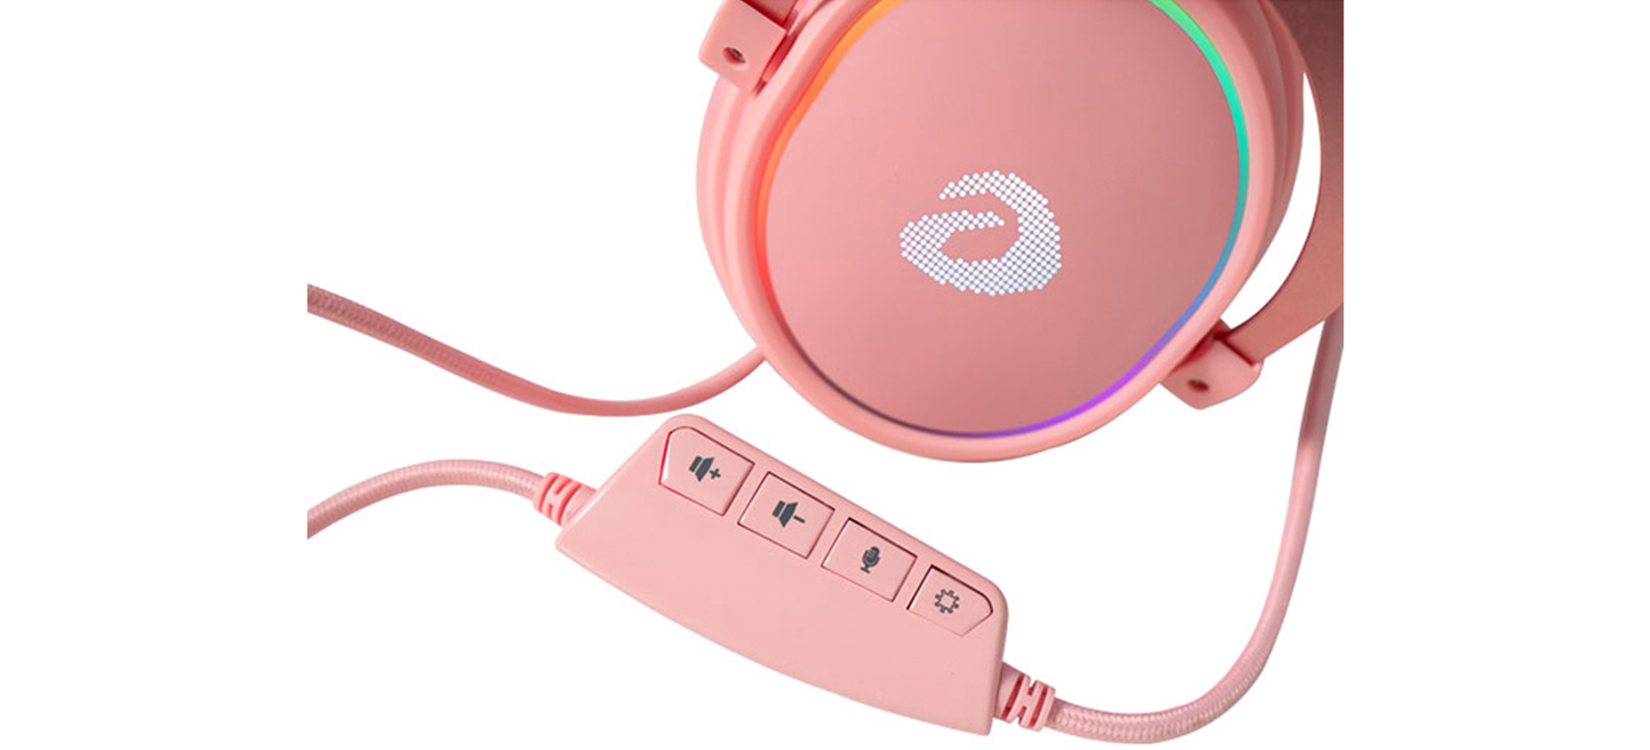 Tai nghe Dareu EH925S (USB, 7.1, Màu hồng, Led RGB)